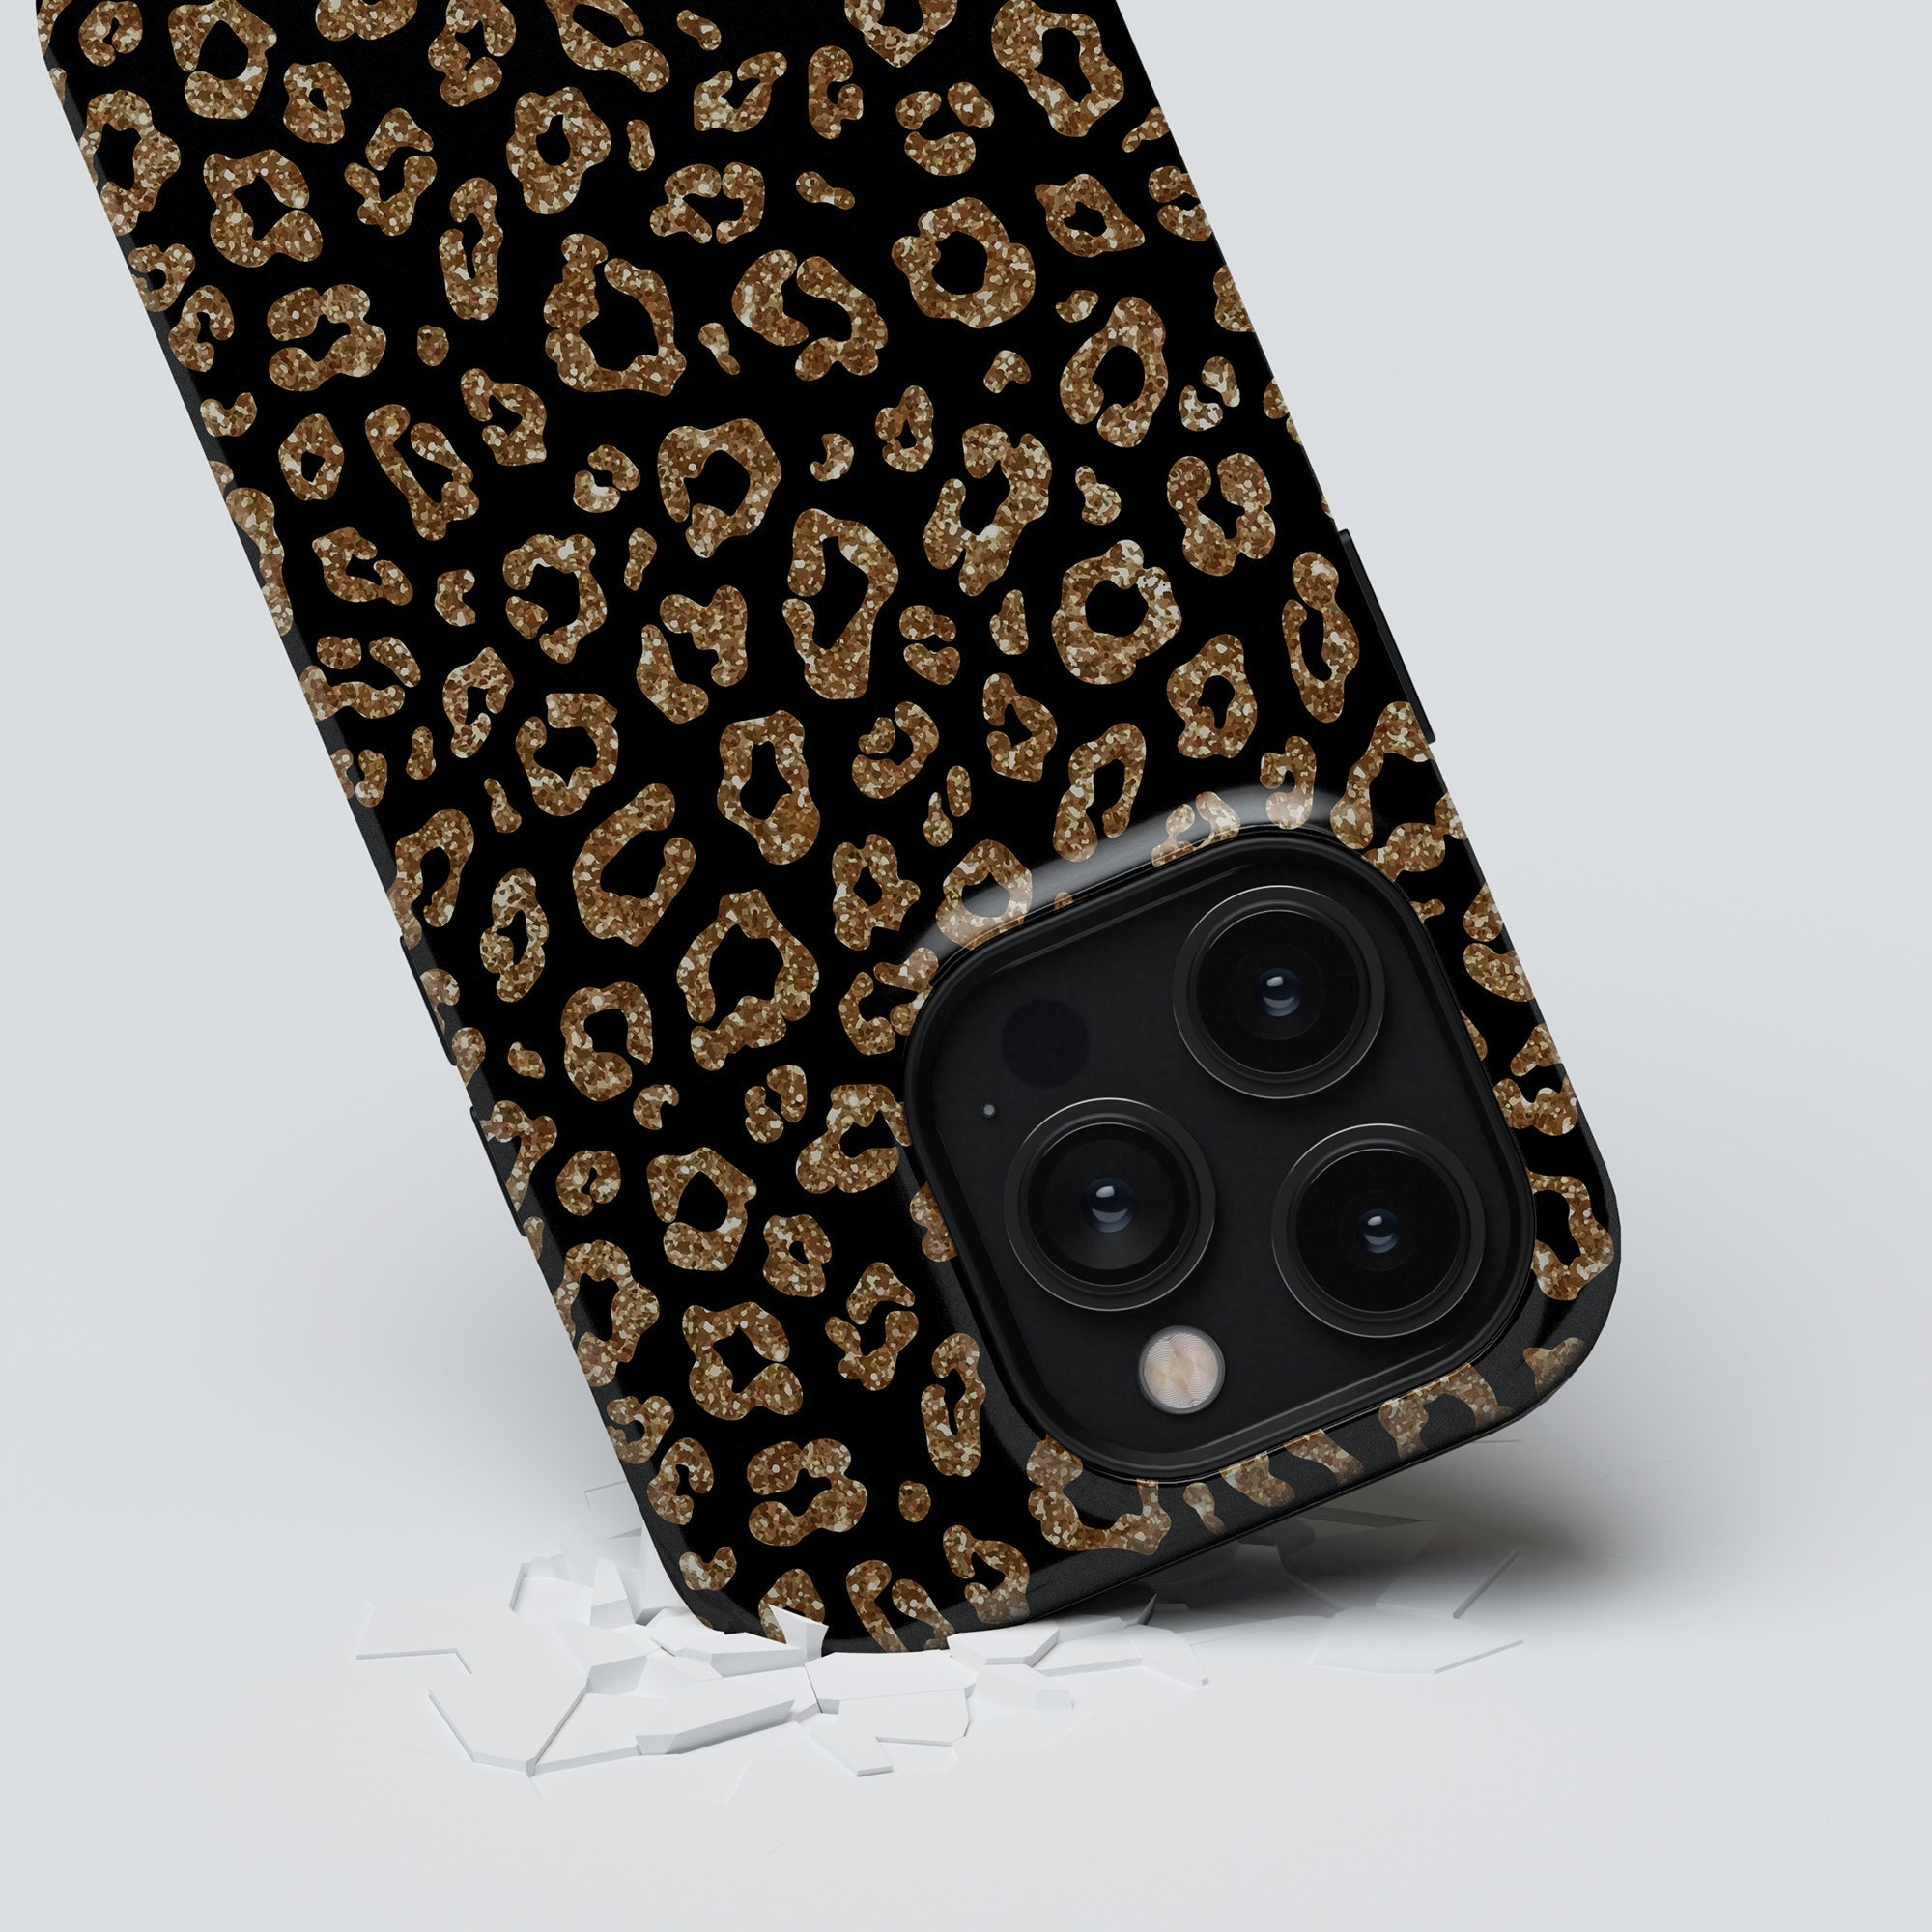 Ett trendigt Kitty Glitter Tough-fodral för iPhone 11, som ger en blandning av stil och skydd i en fantastisk design i svart och guld med leopardtryck.